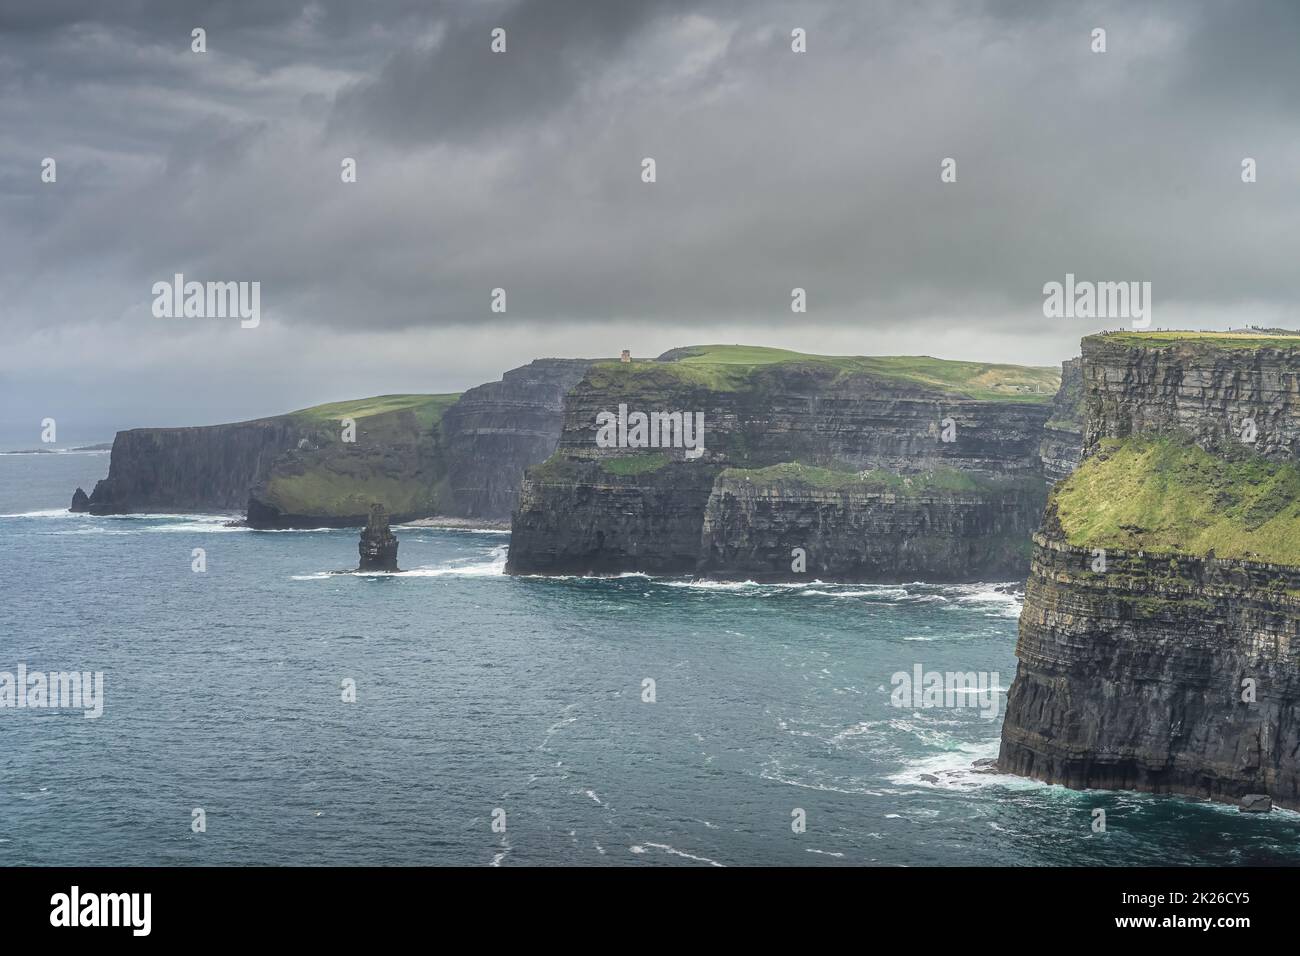 Falaises emblématiques de Moher avec la Tour OBriens sur une distance lointaine, Irlande Banque D'Images